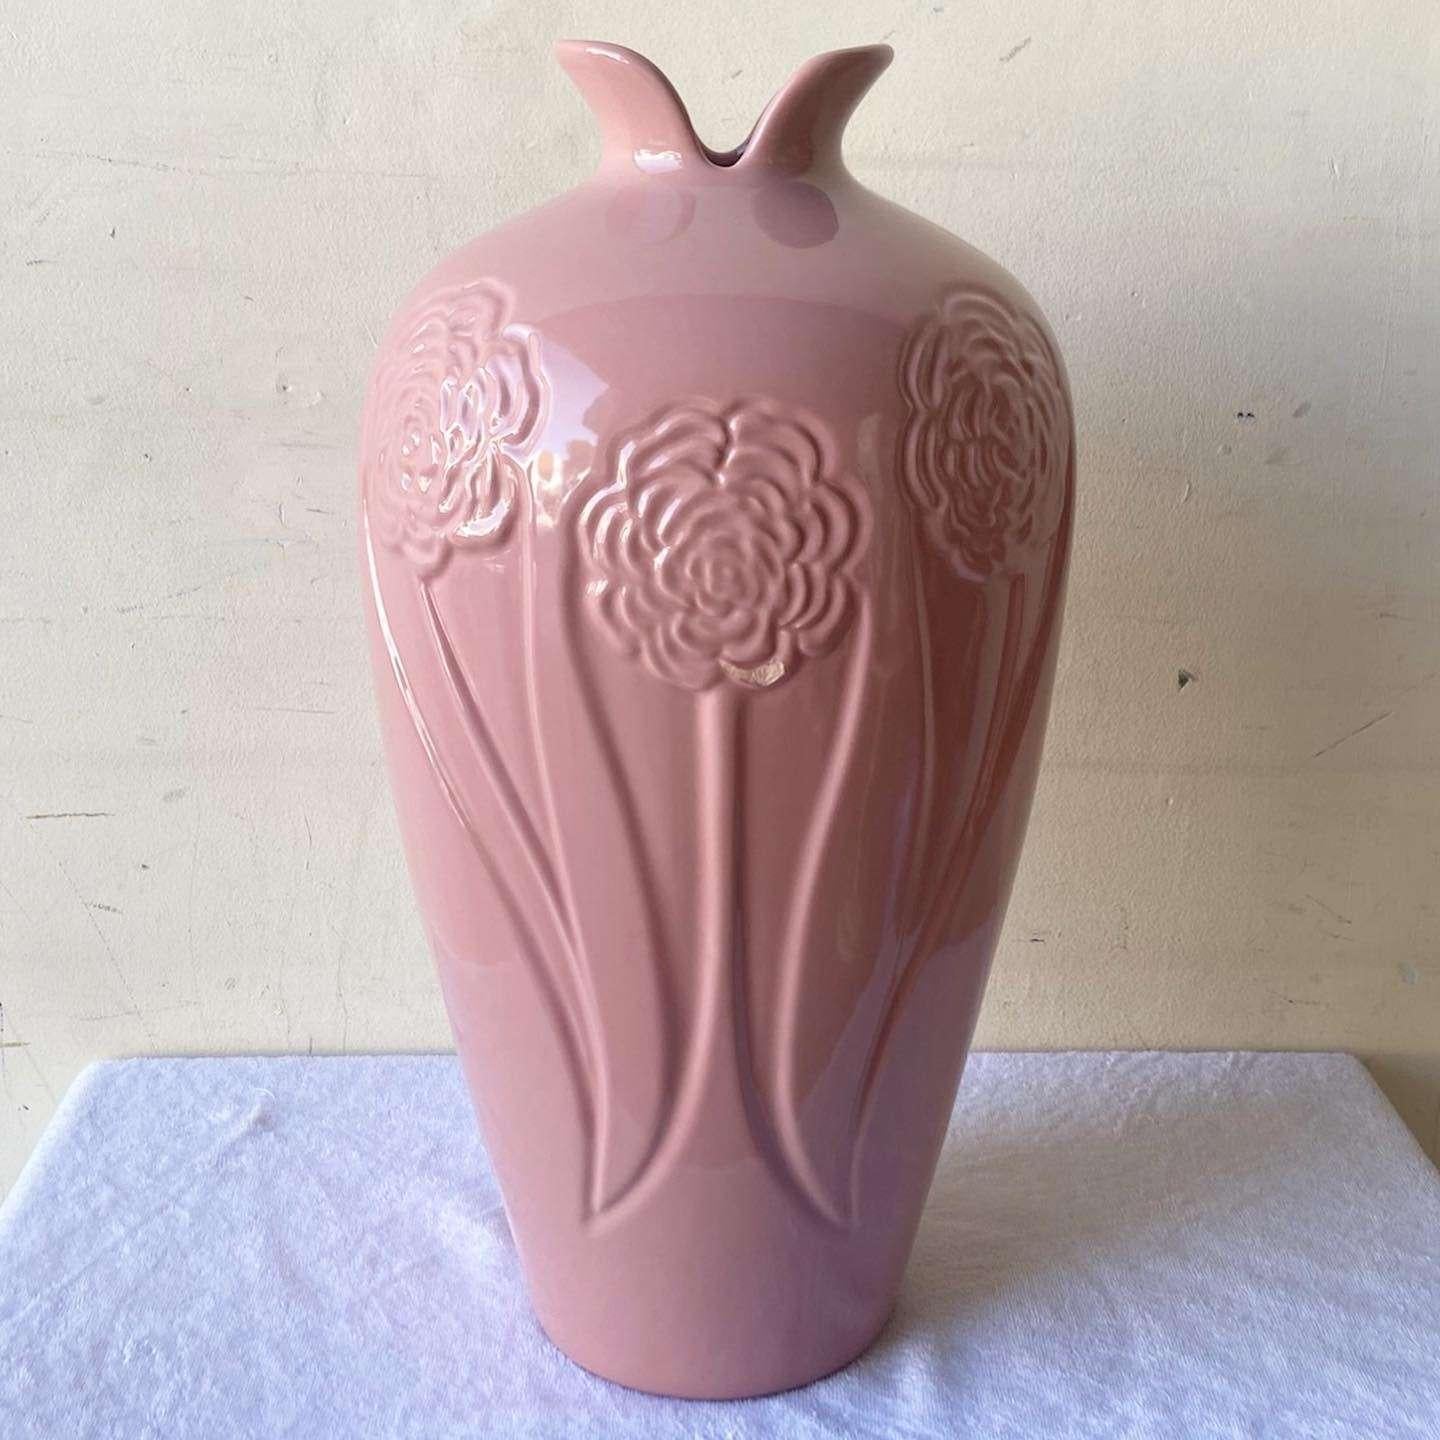 Außergewöhnliche Vintage Postmodern Keramik Bodenvase. Sie hat eine glänzende rosa Oberfläche mit Blumen, die um die Büste und den Sockel herum geätzt sind.
